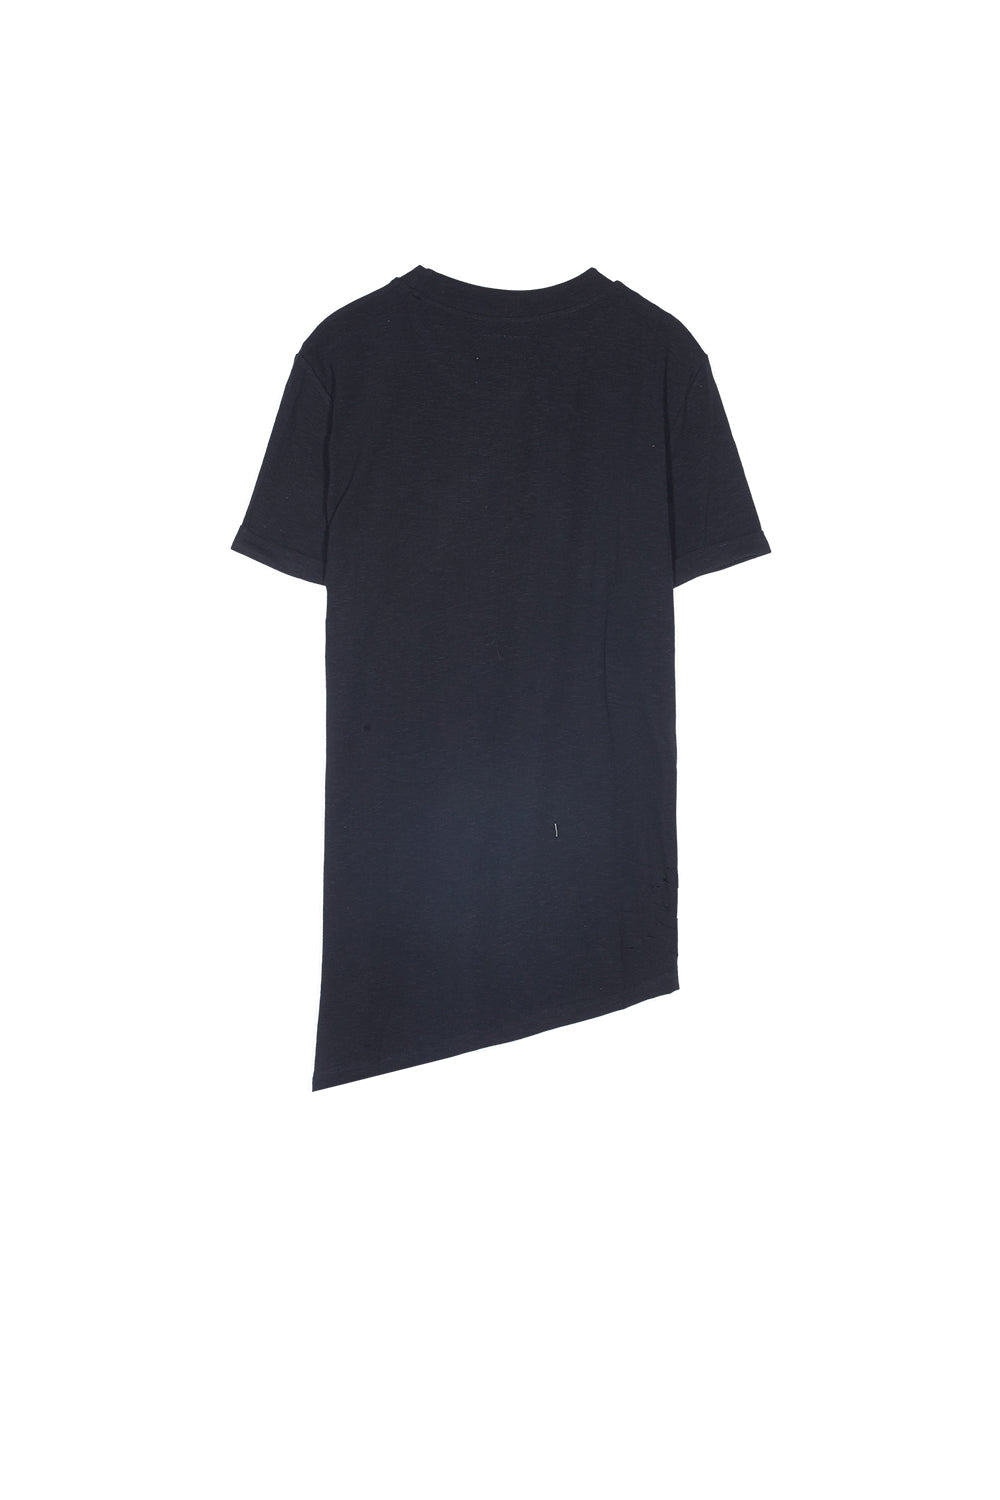 Sixth June - T-shirt trous asymétrique noir